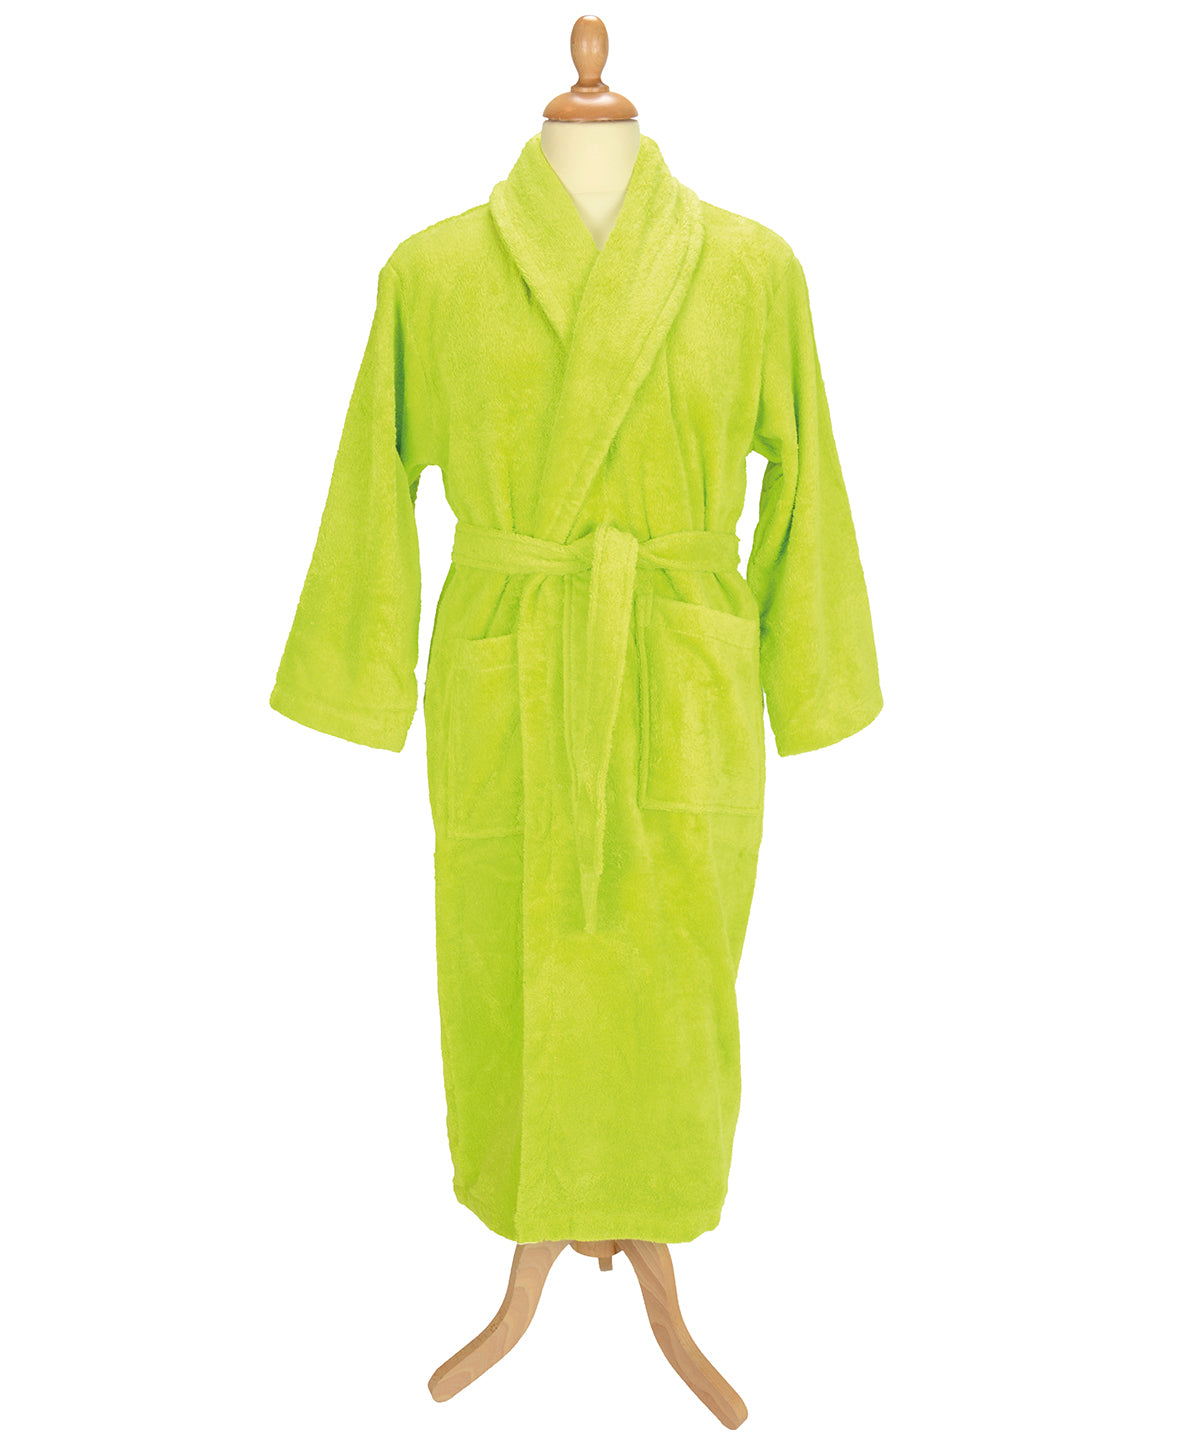 ARTG® Bath robe with shawl collar 